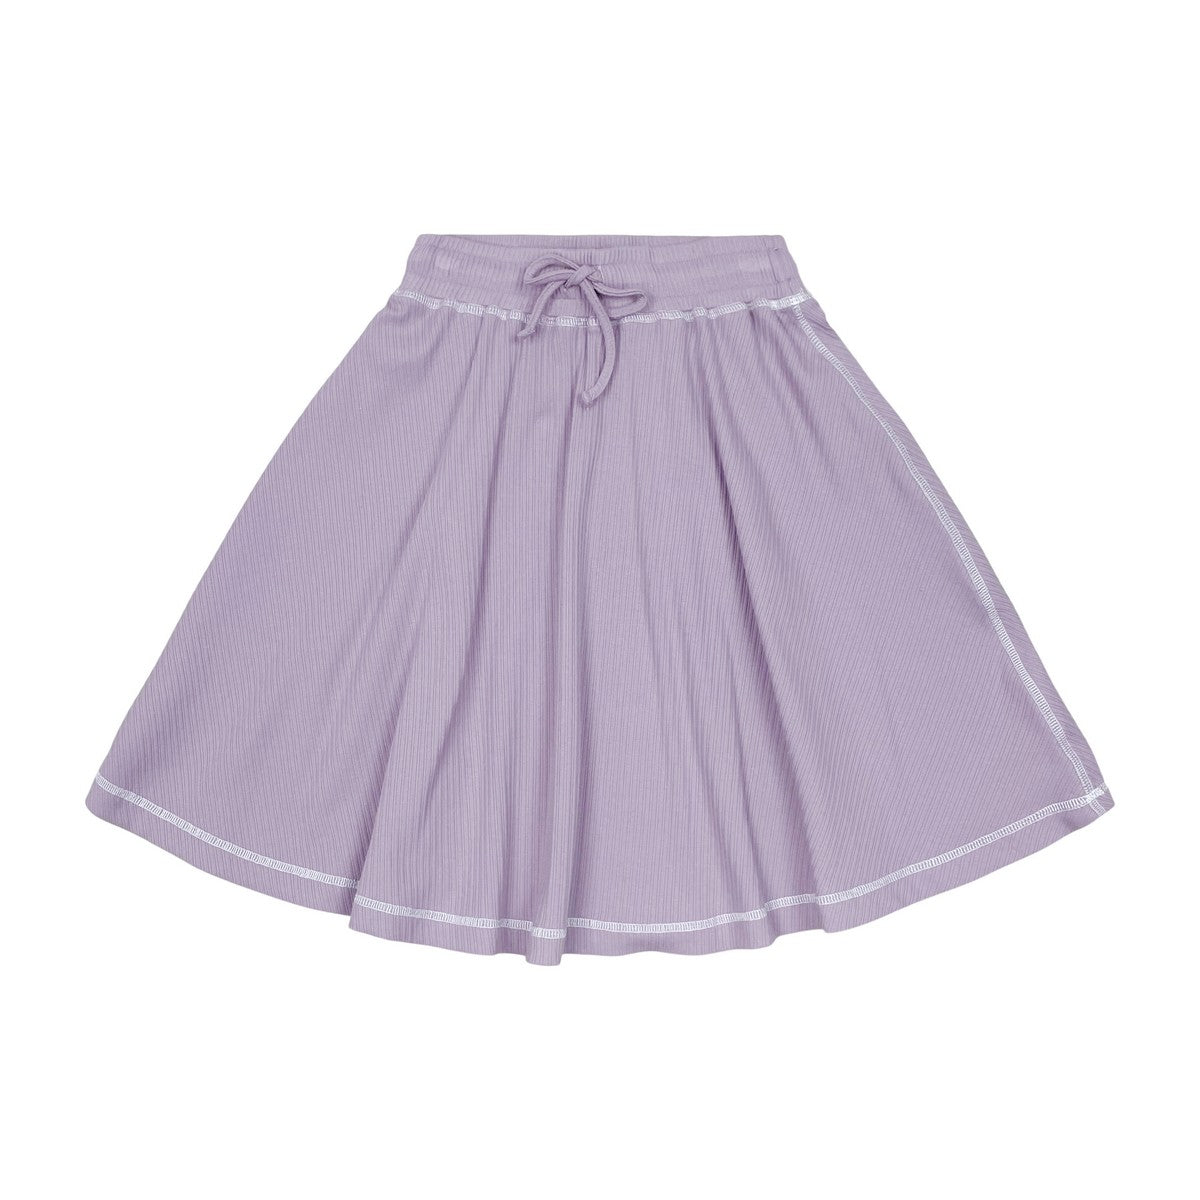 Violet Contrast Wrap Skirt